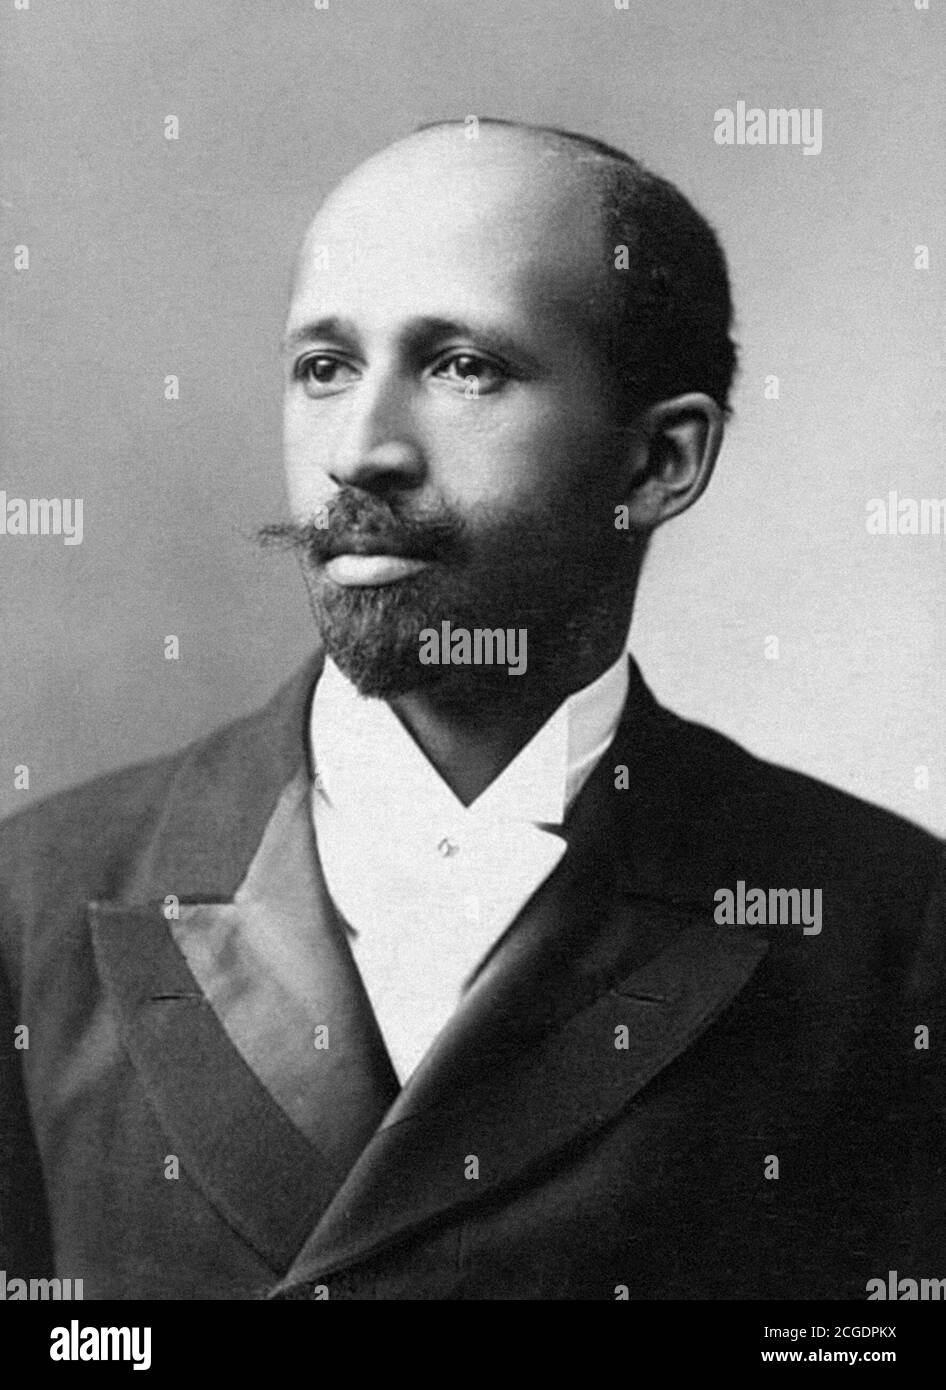 W E B du Bois. Portrait de William Edward Burghardt du Bois (1868-1963) par James E. Purdy, 1907. Du Bois était un sociologue américain, un socialiste, un historien et un militant des droits civils. Banque D'Images